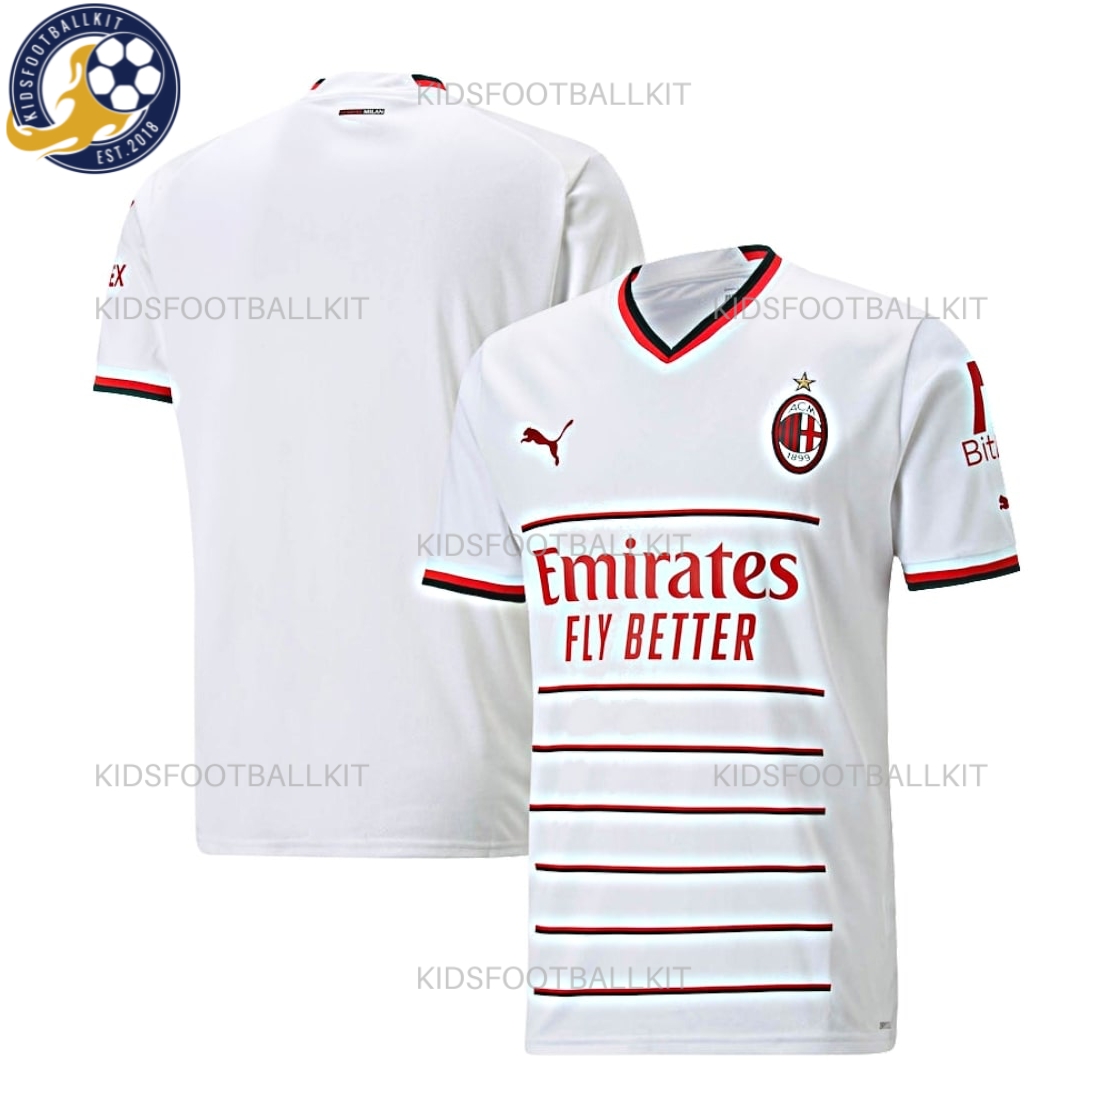 AC Milan Away Kit